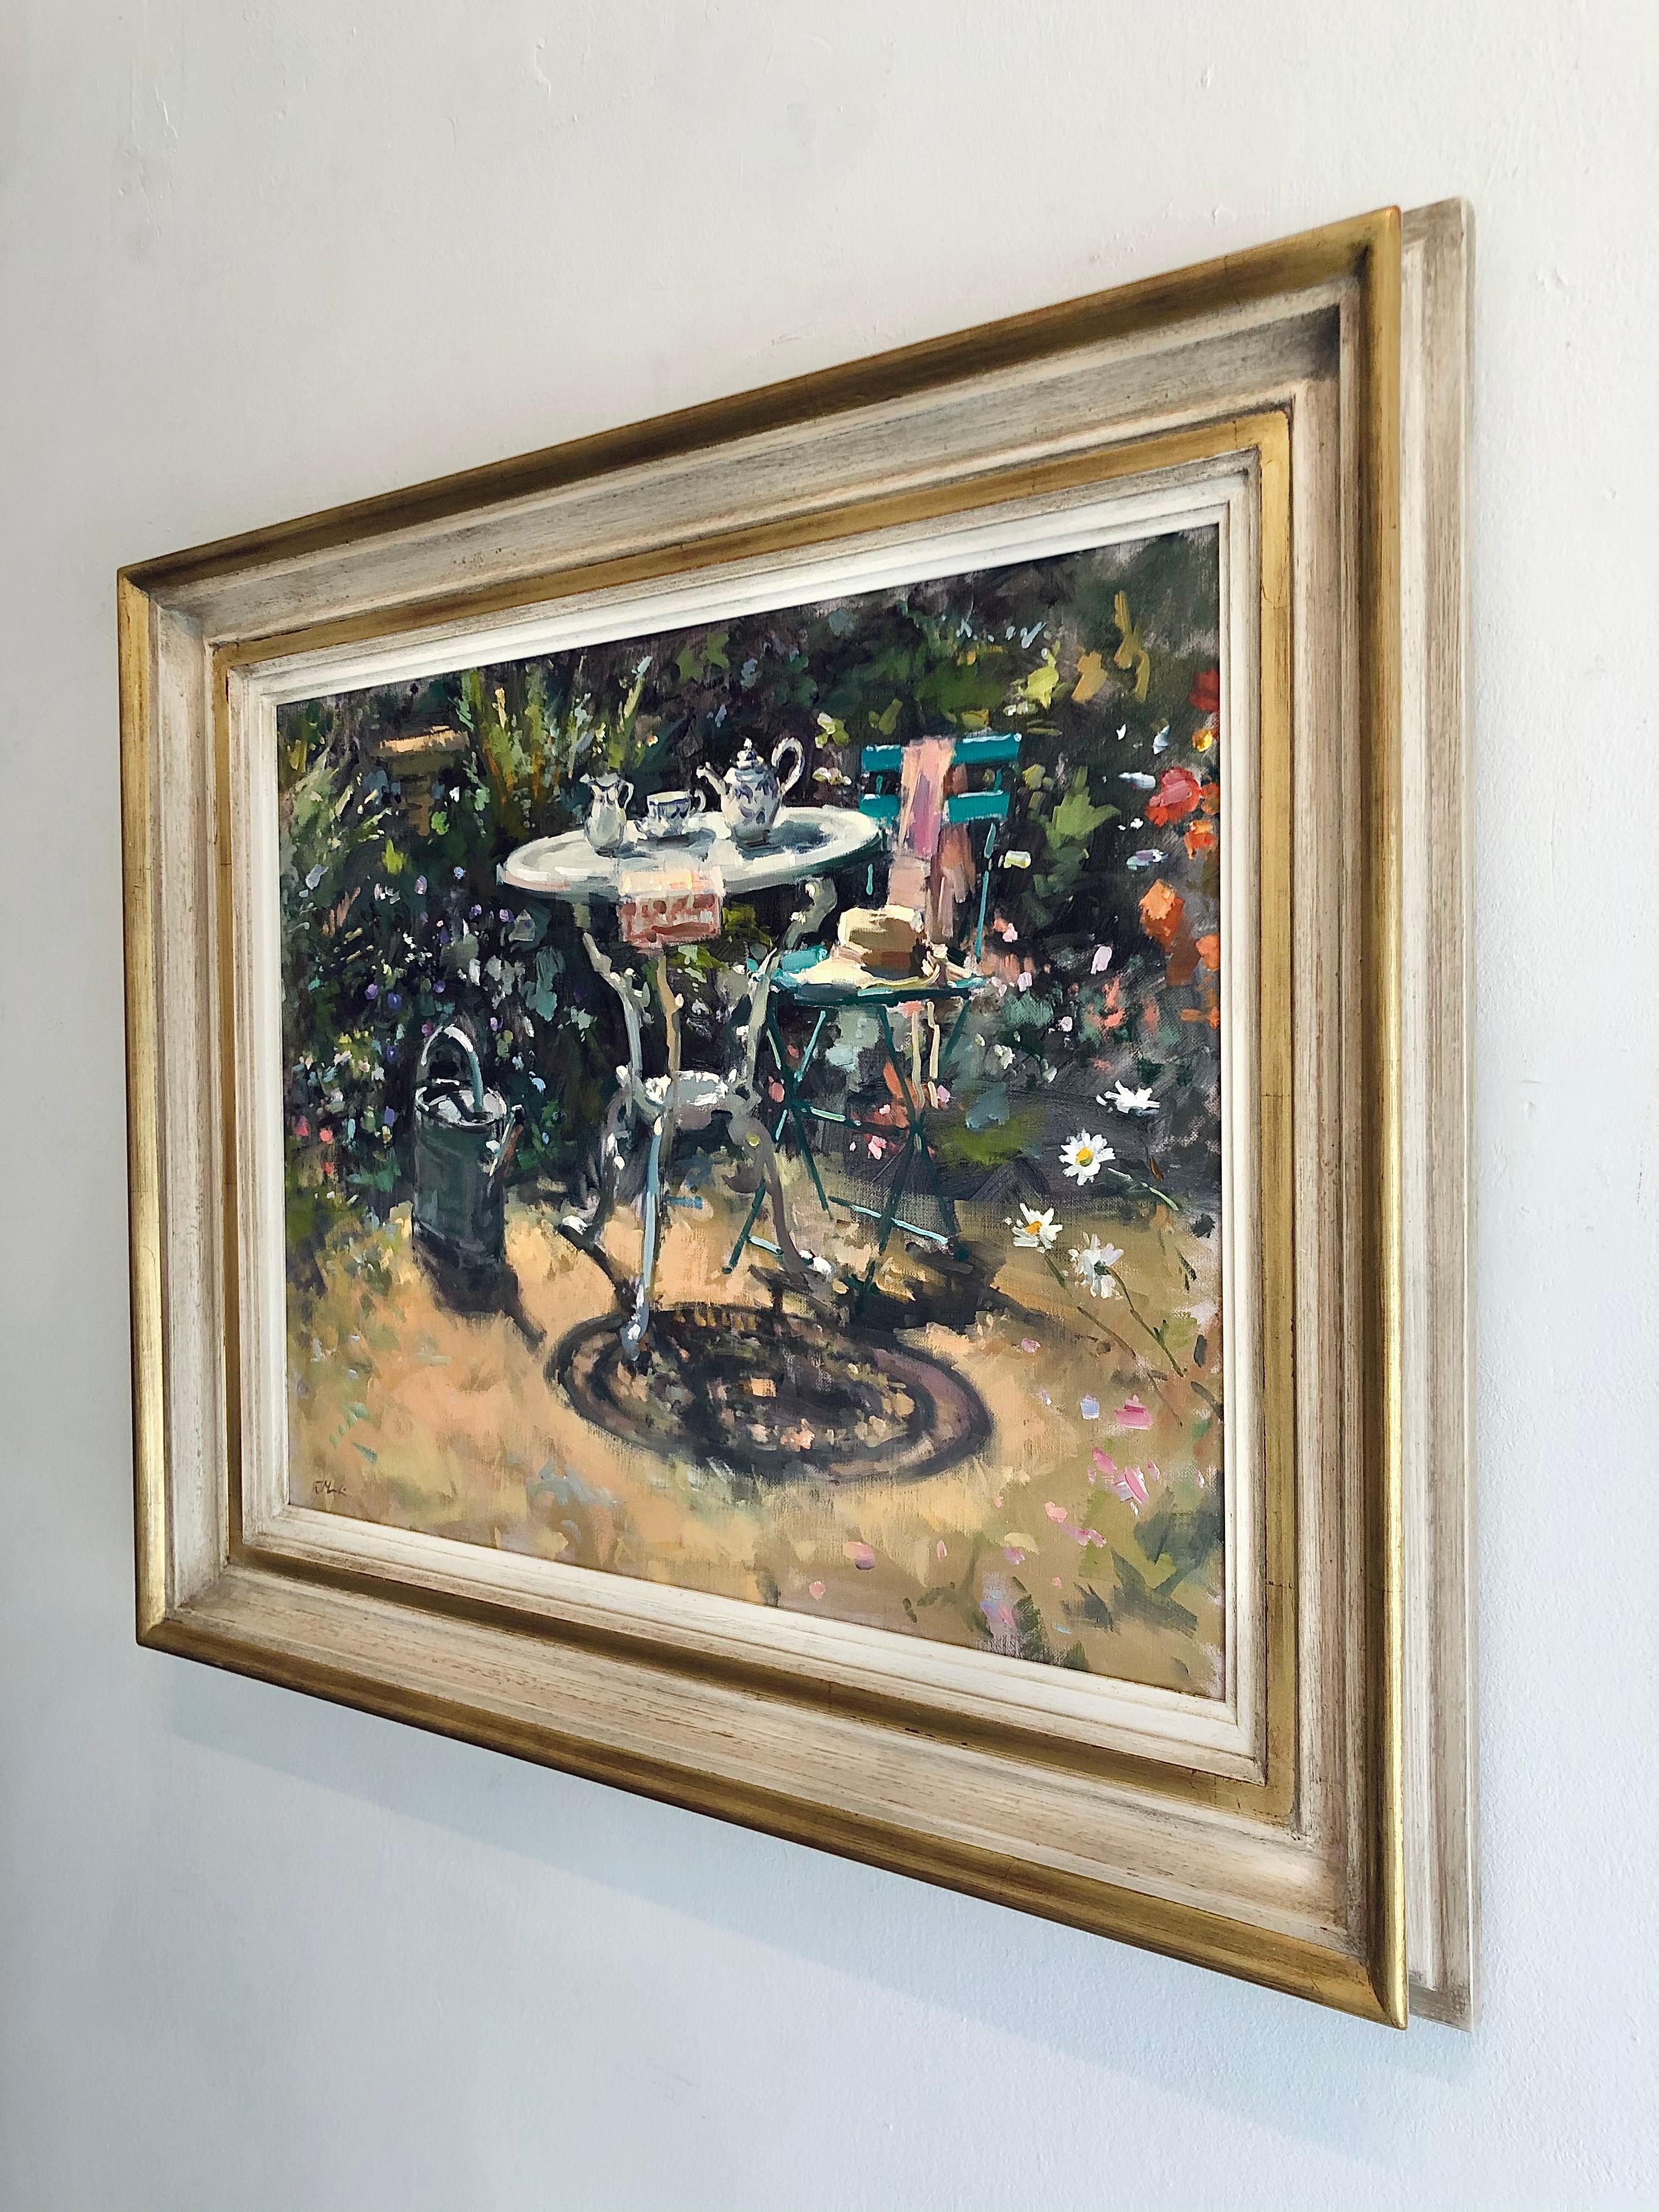 Der zeitgenössische Maler John D. Martin zeigt in klassisch englischem impressionistischem Stil eine erhabene Gartenszene im Freien, die in der fröhlichen Jahreszeit des Frühlings angesiedelt ist. Die Künstlerin verwendet eine weiche, verschwommene